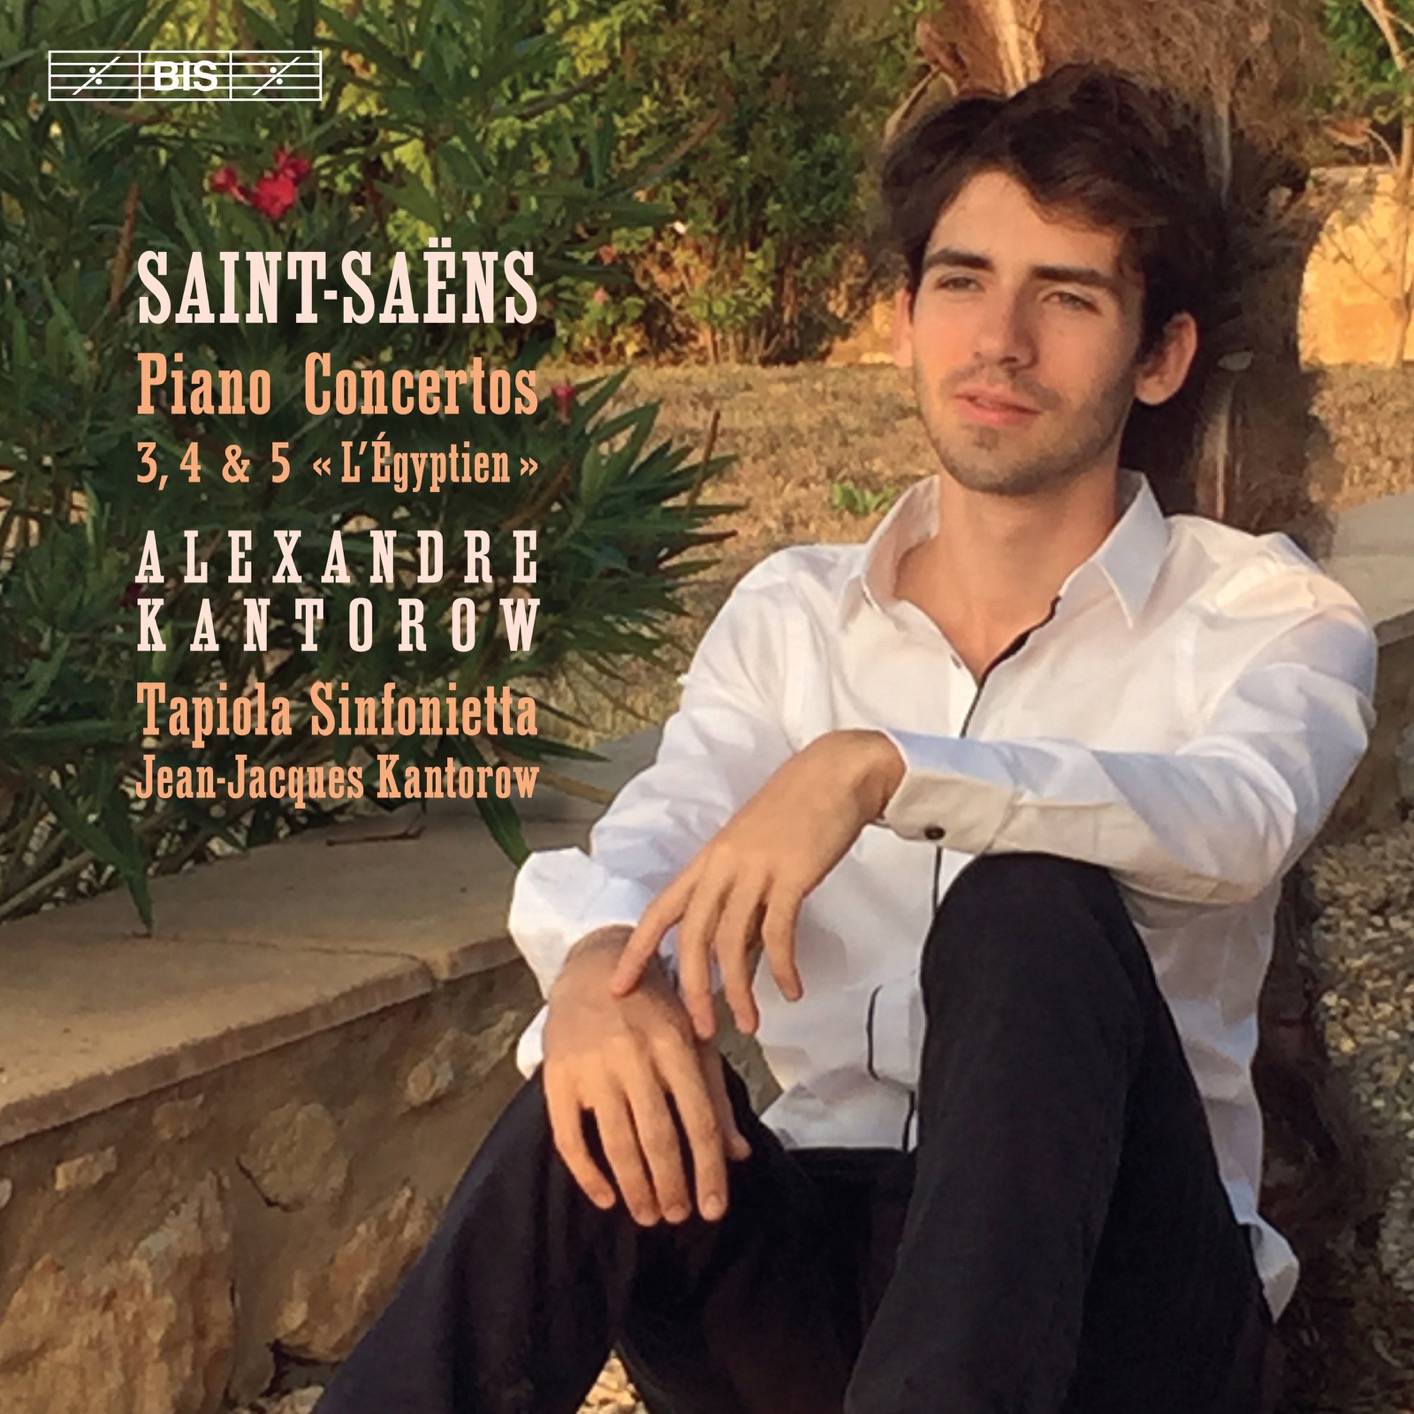 Alexandre Kantorow - Saint-Saens: Piano Concertos Nos. 3-5 (2019) [FLAC 24bit/96kHz]